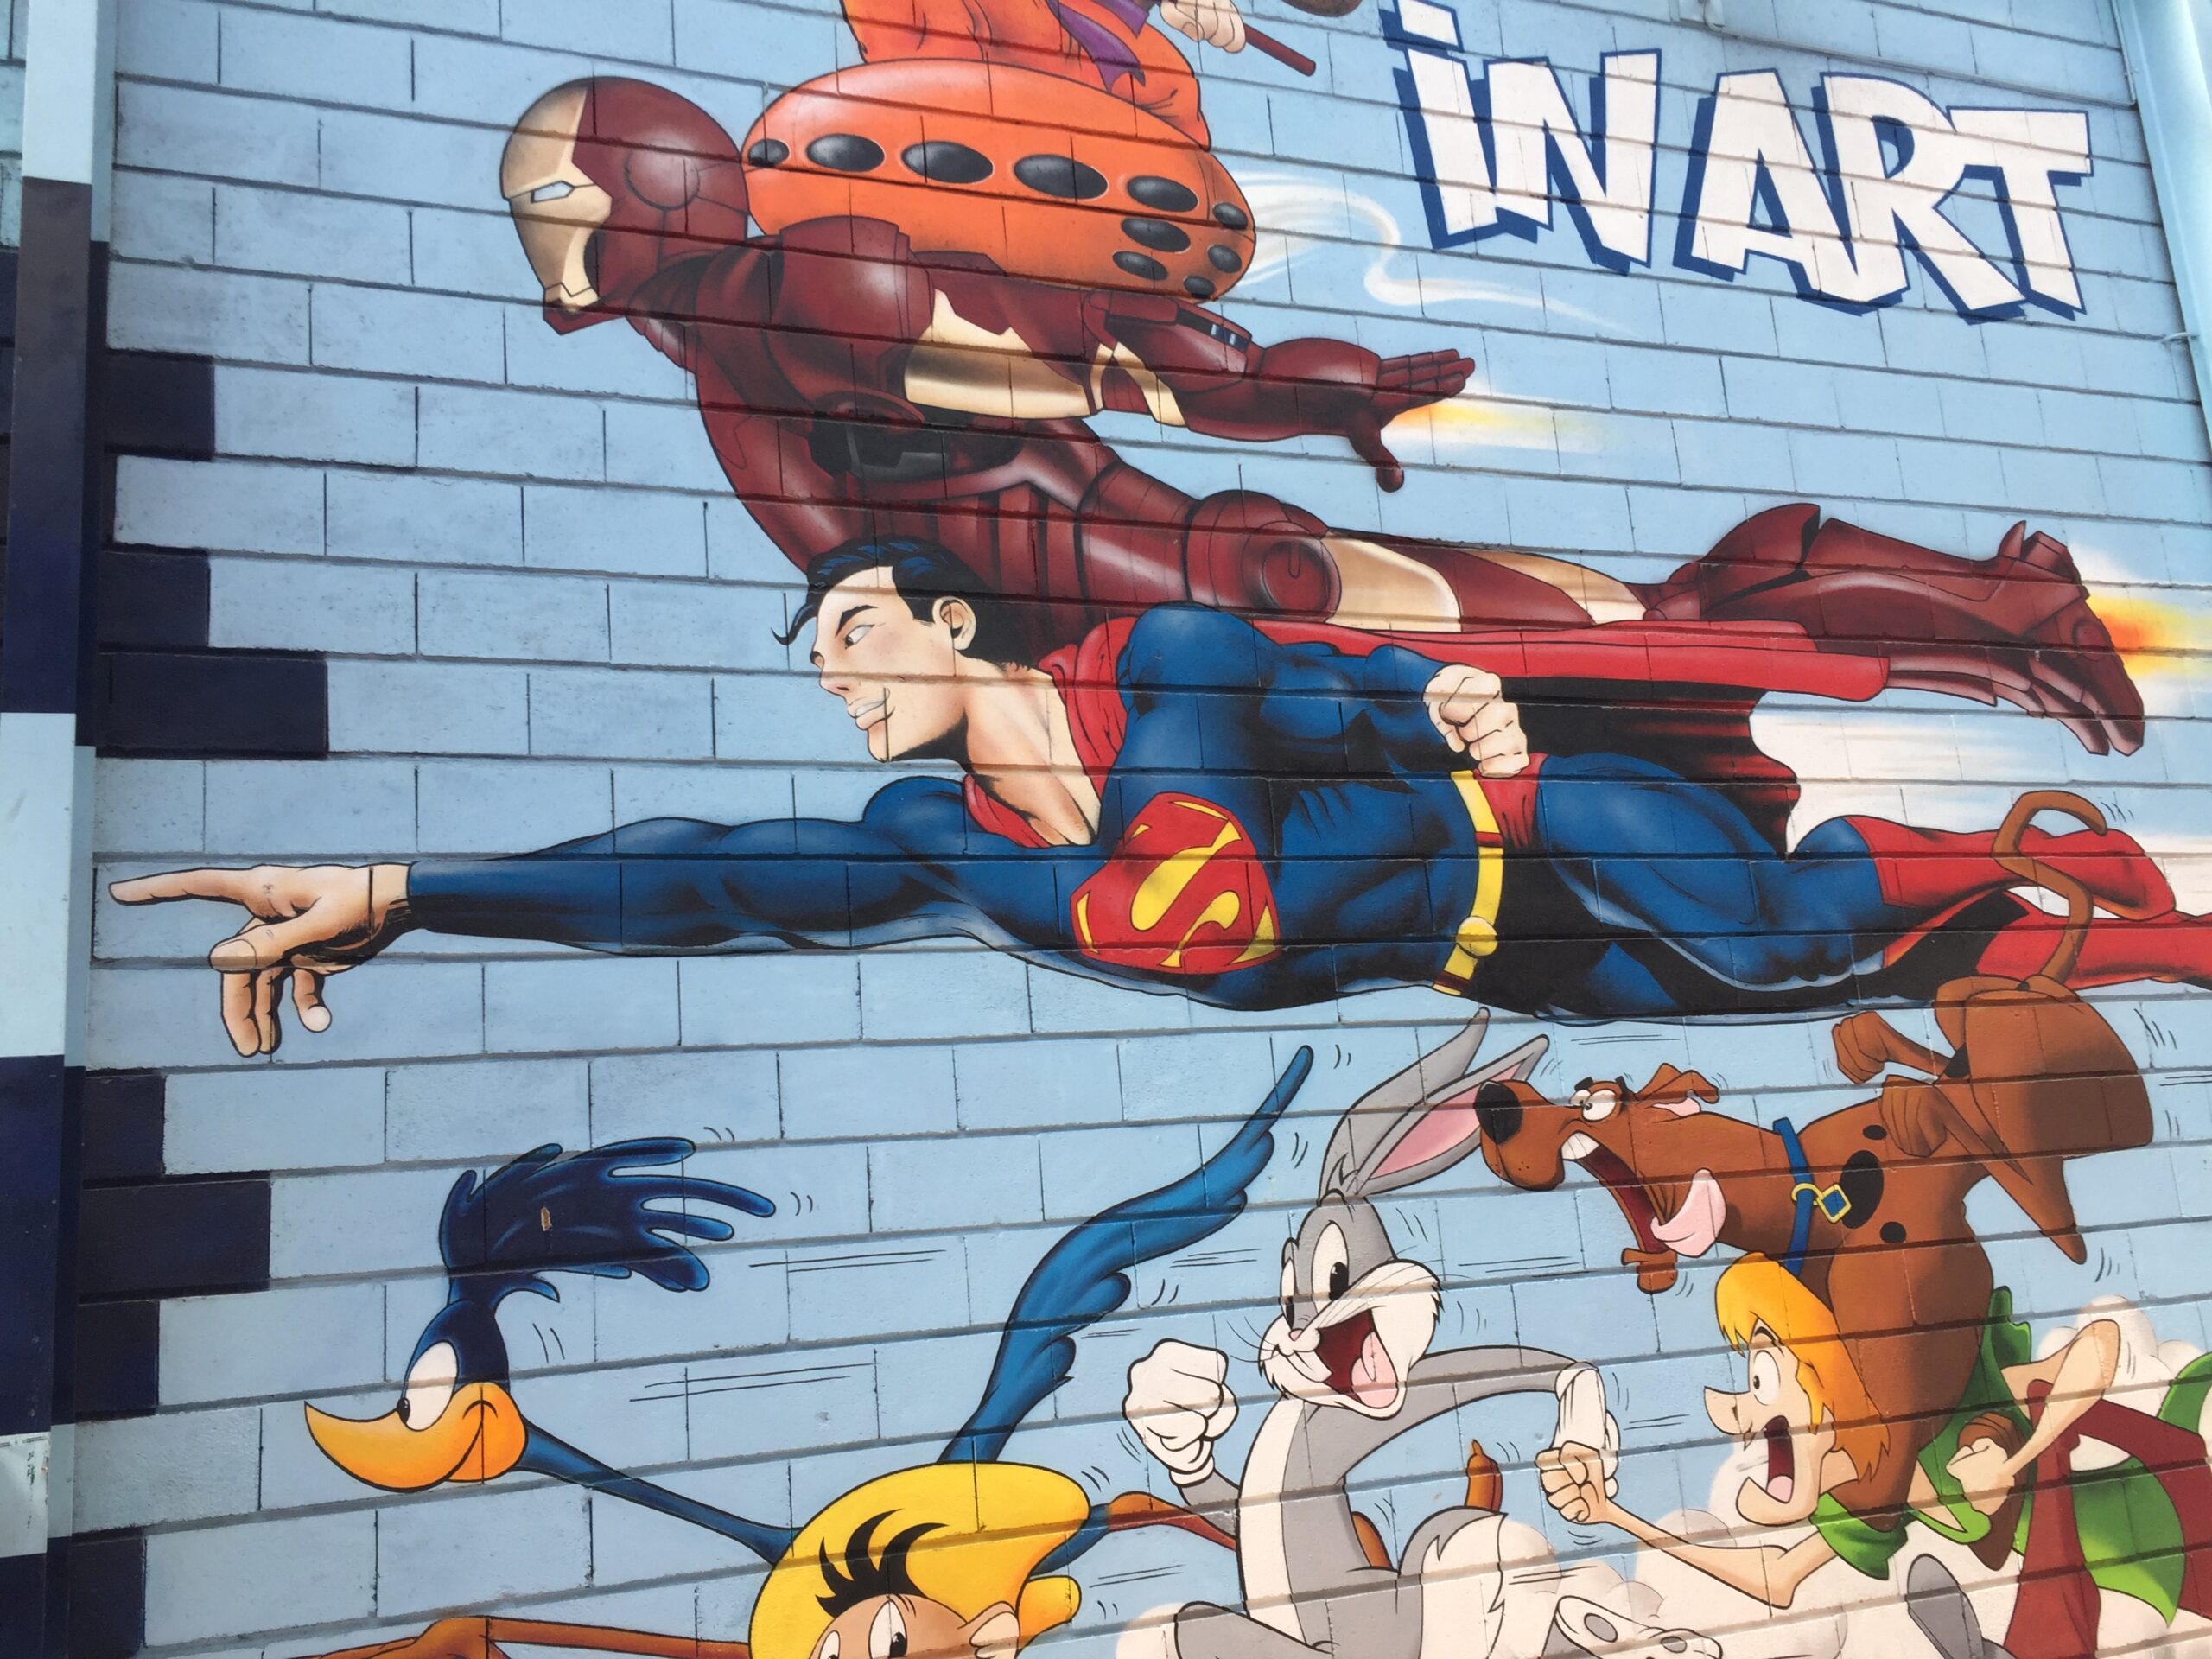 Mural auf hellblauem Hintergrund, sind Comic-Helden abgebildet, wie Superman, Bugs-Bunny und weitere